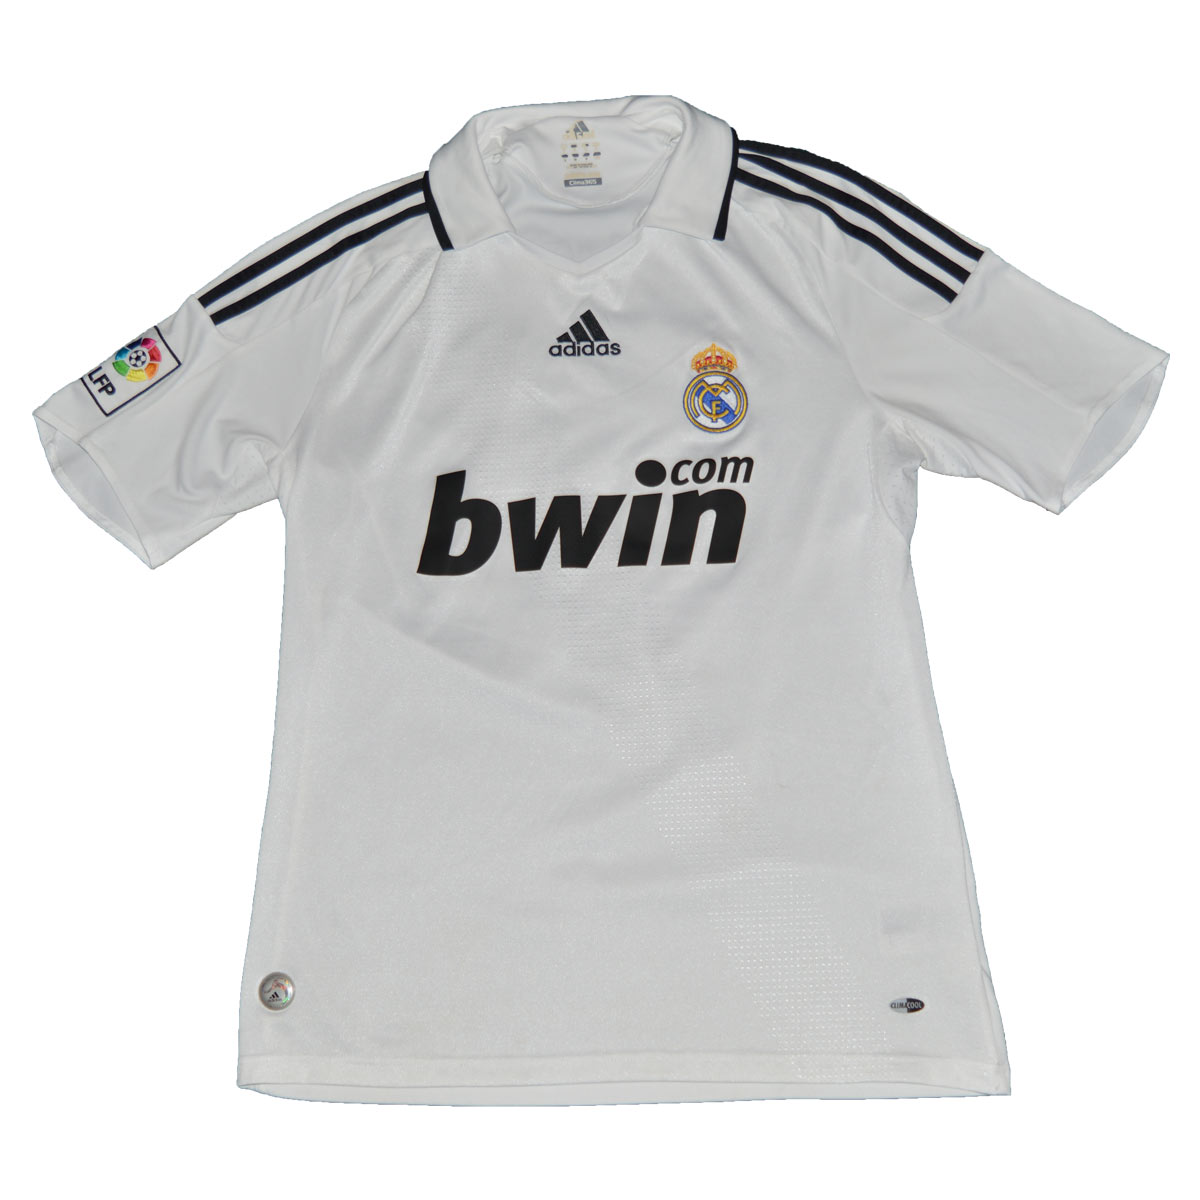 Maillot de foot rétro/vintage authentique blanc domicile adidas Real Madrid 2008-2009 Higuain